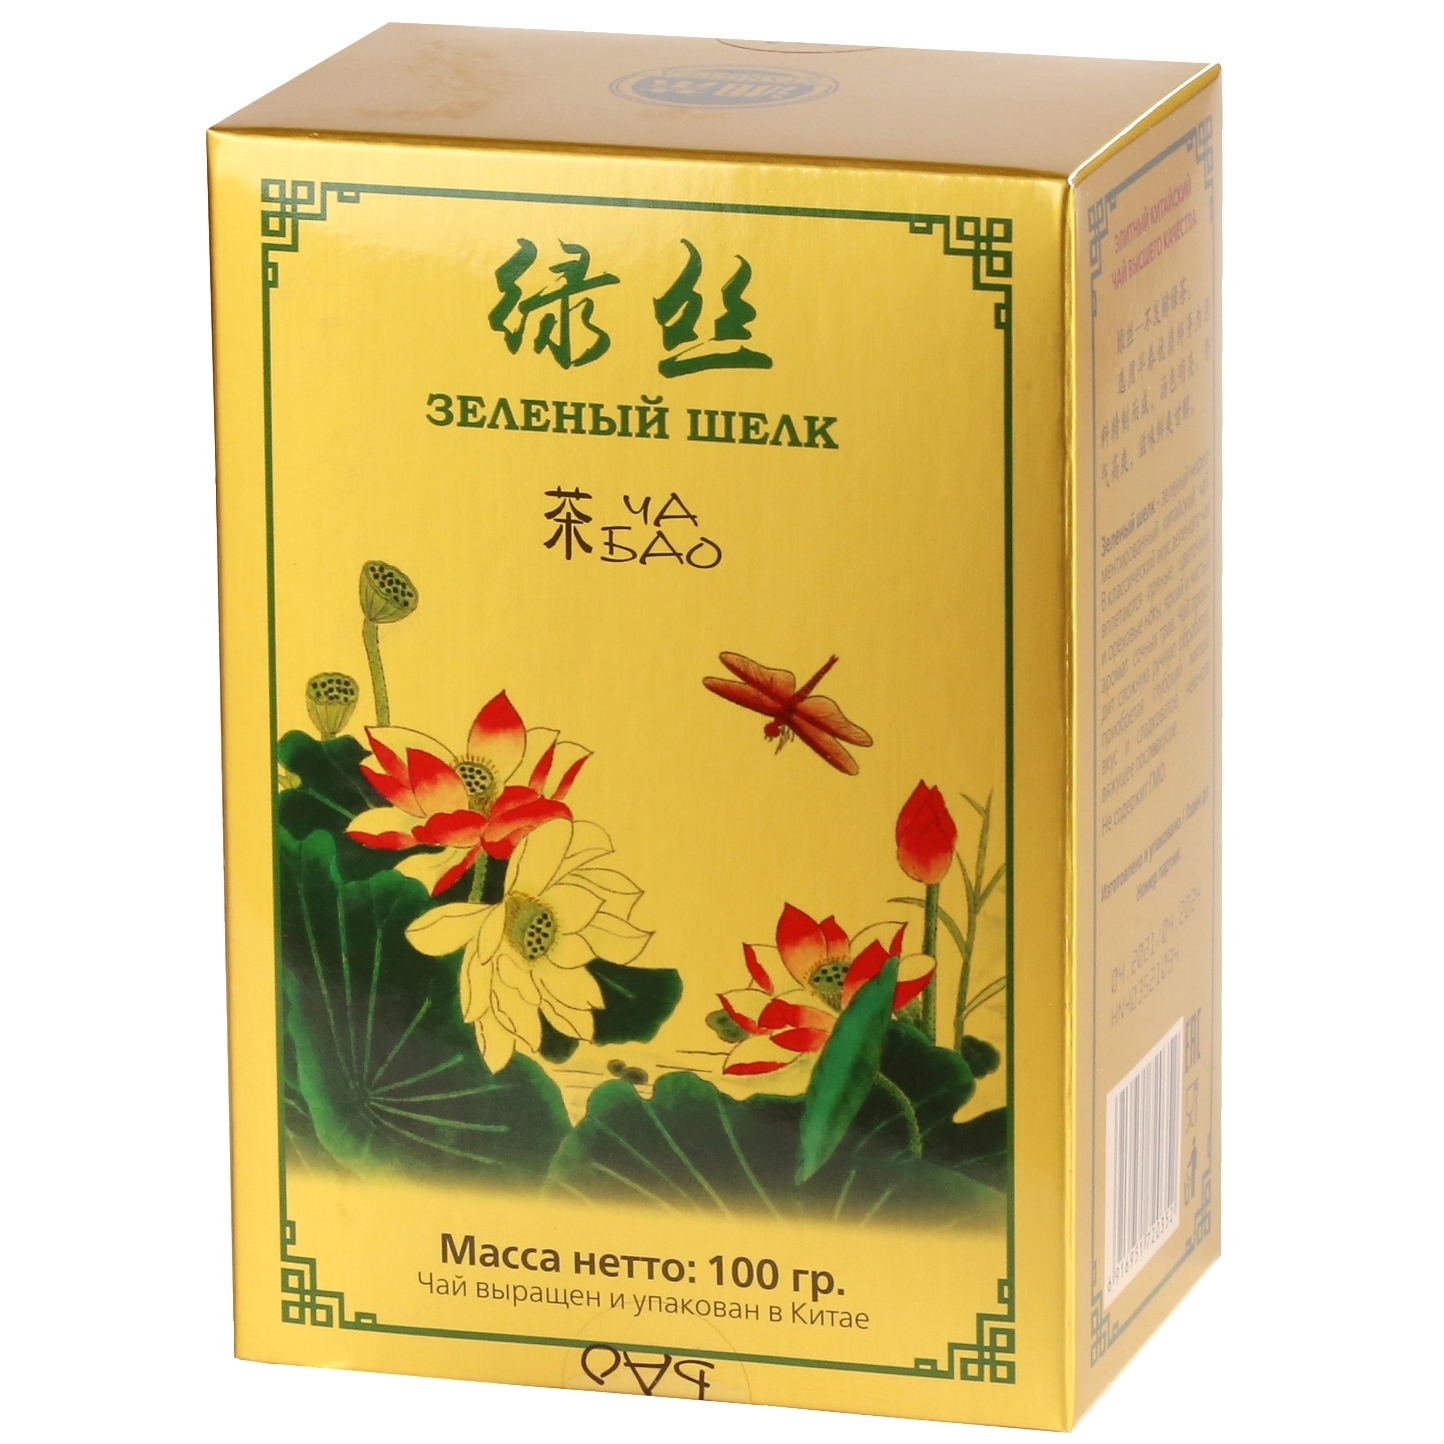 Чай зеленый листовой Ча Бао Зеленый шелк, Китай, 100 г чай зеленый листовой ча бао зеленый шелк китай 100 г